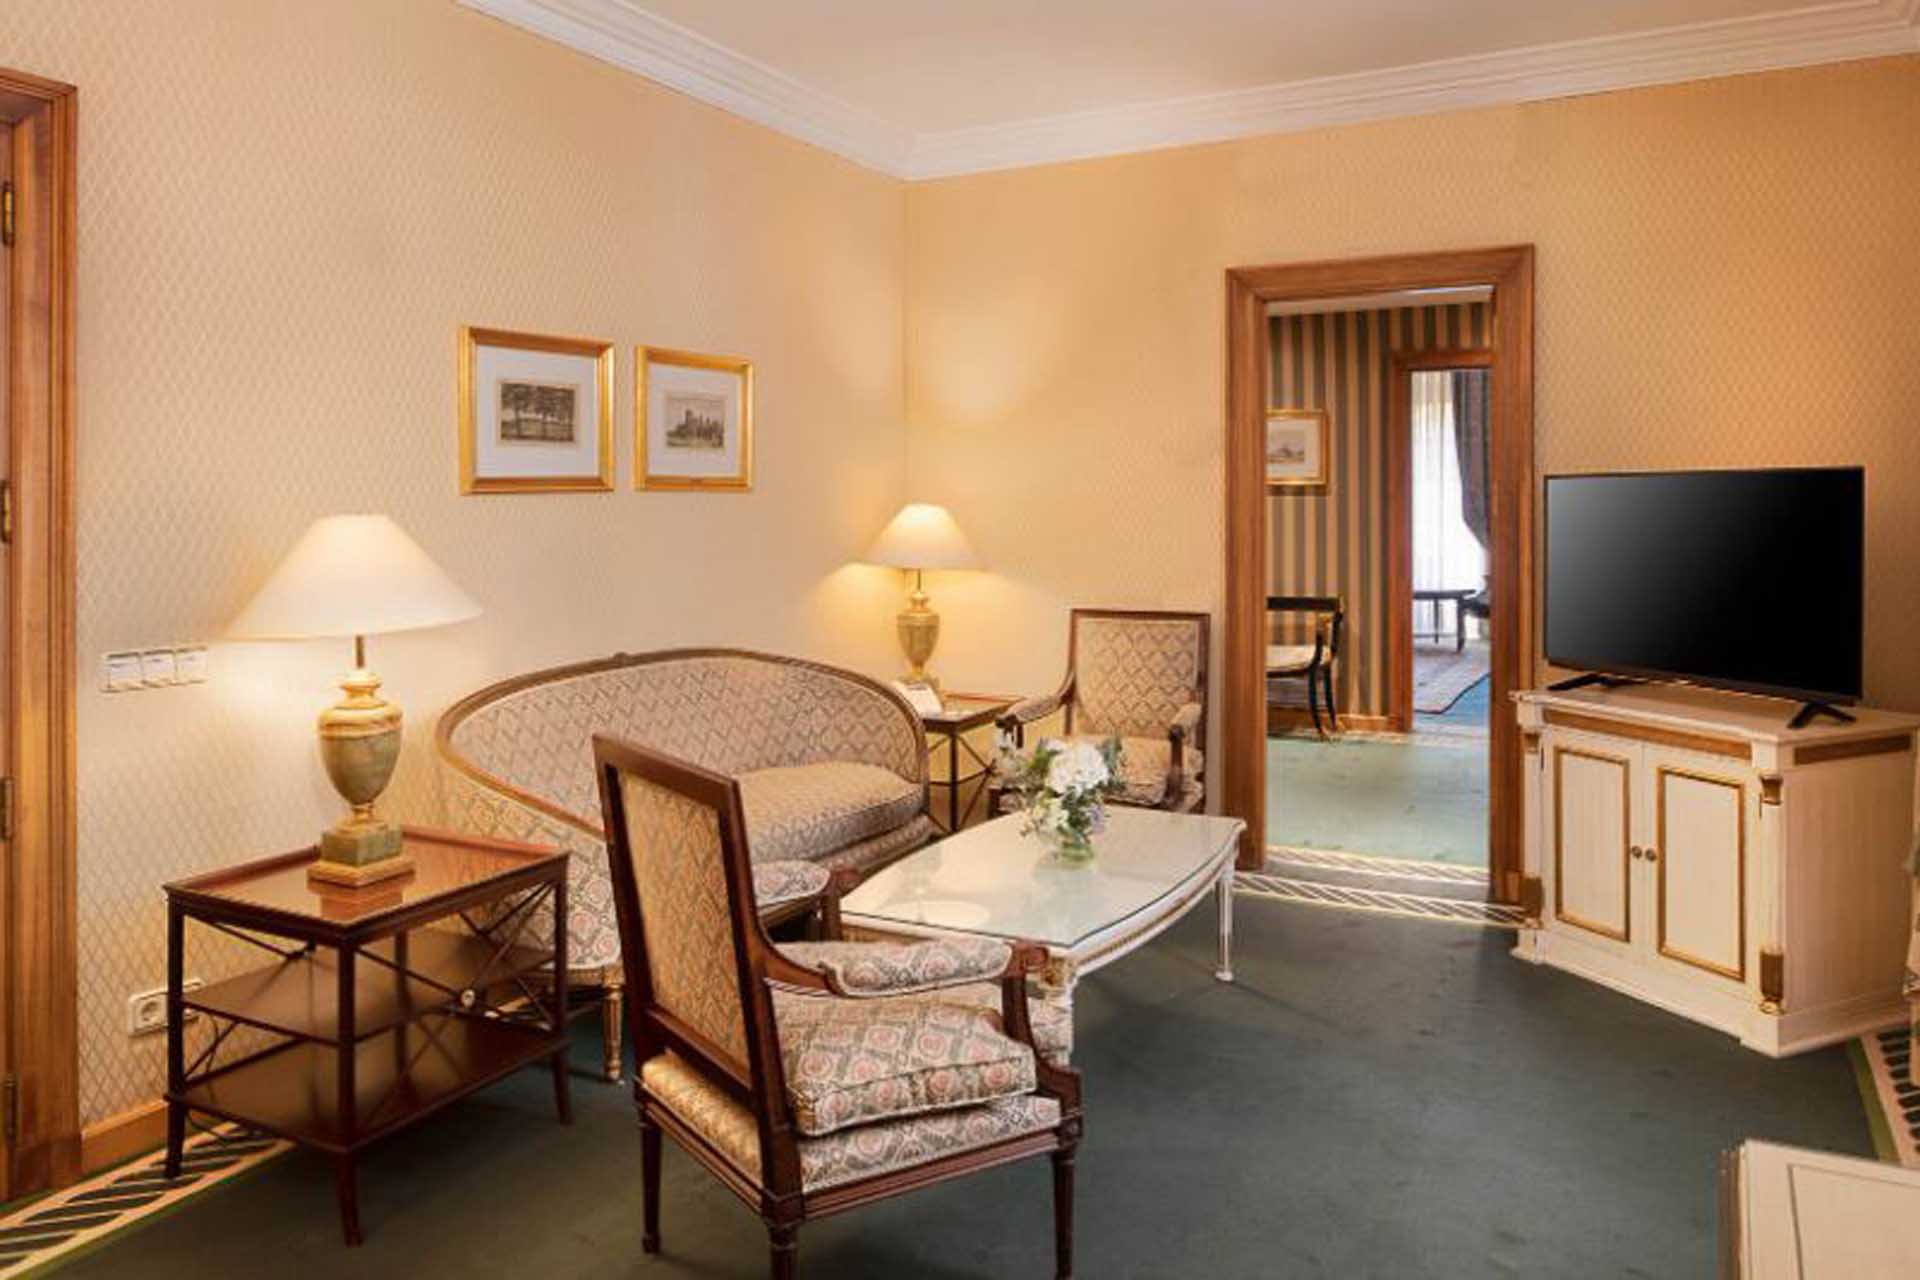 Una zona de descanso tipo salita de la suite en la que se hospedan los Reyes Felipe y Letizia en los Premios Princesa de Asturias